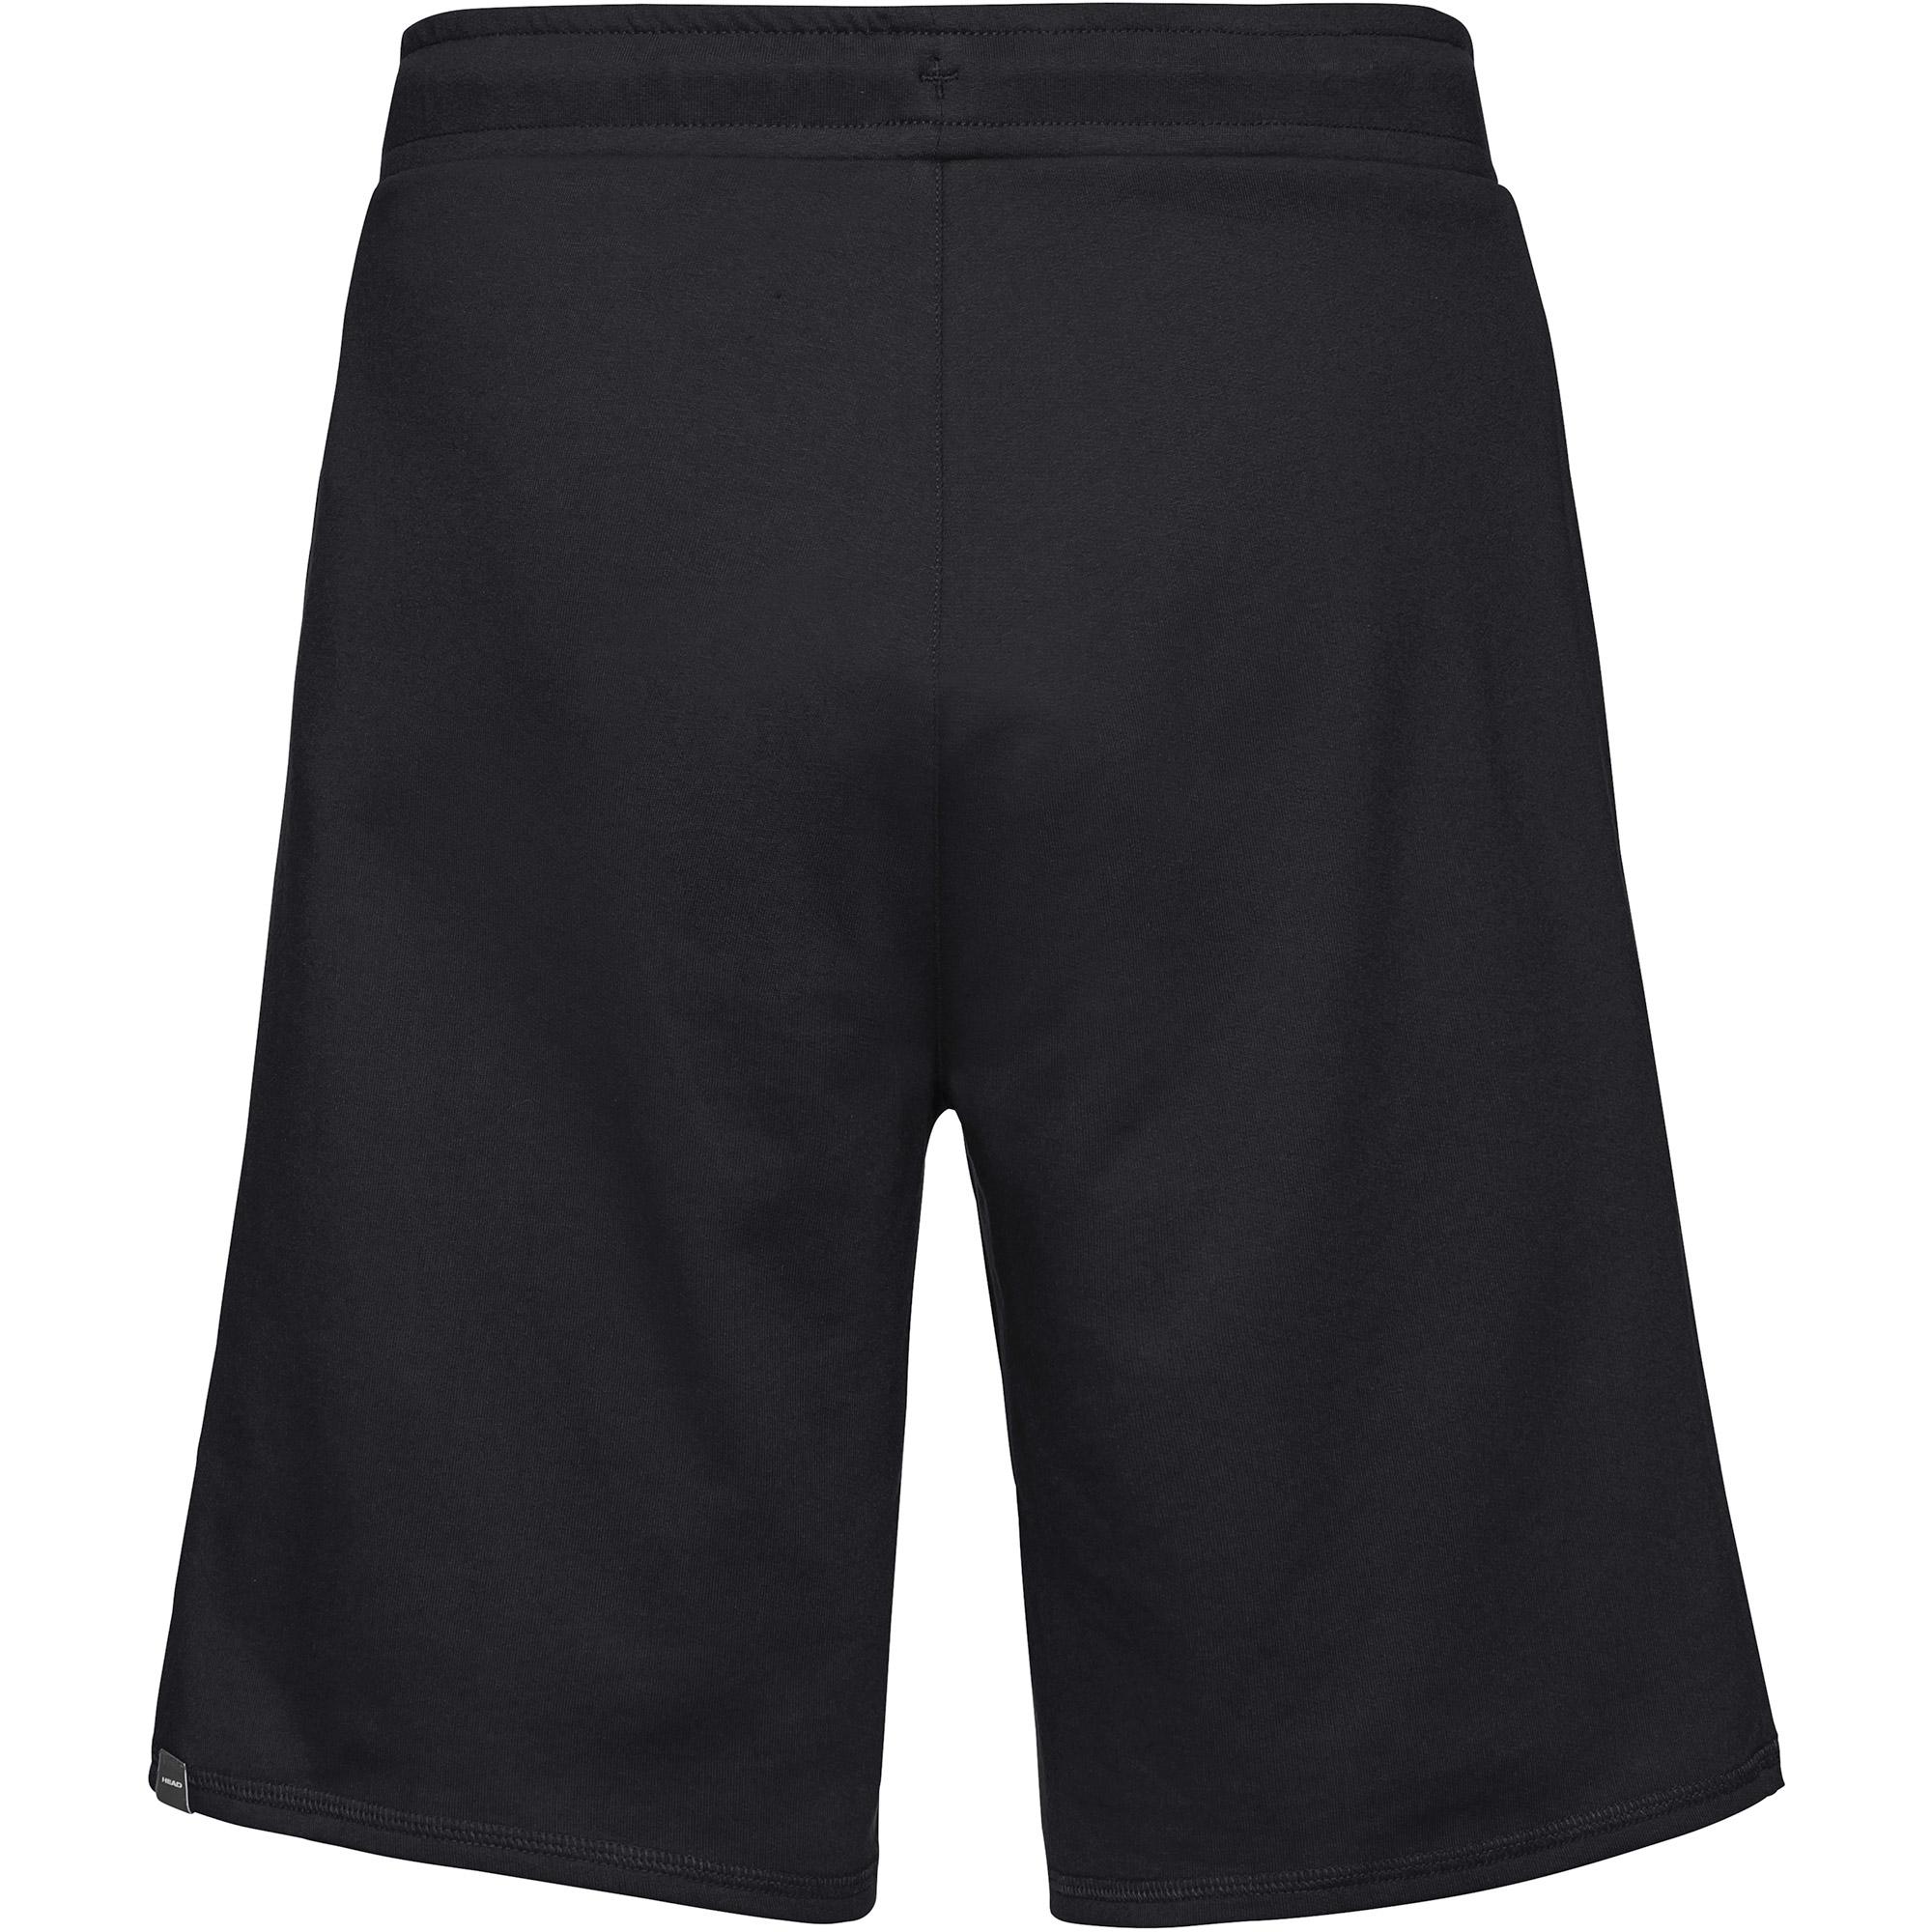 Head Mens Club Jacob Bermudas Shorts - Black - Tennisnuts.com